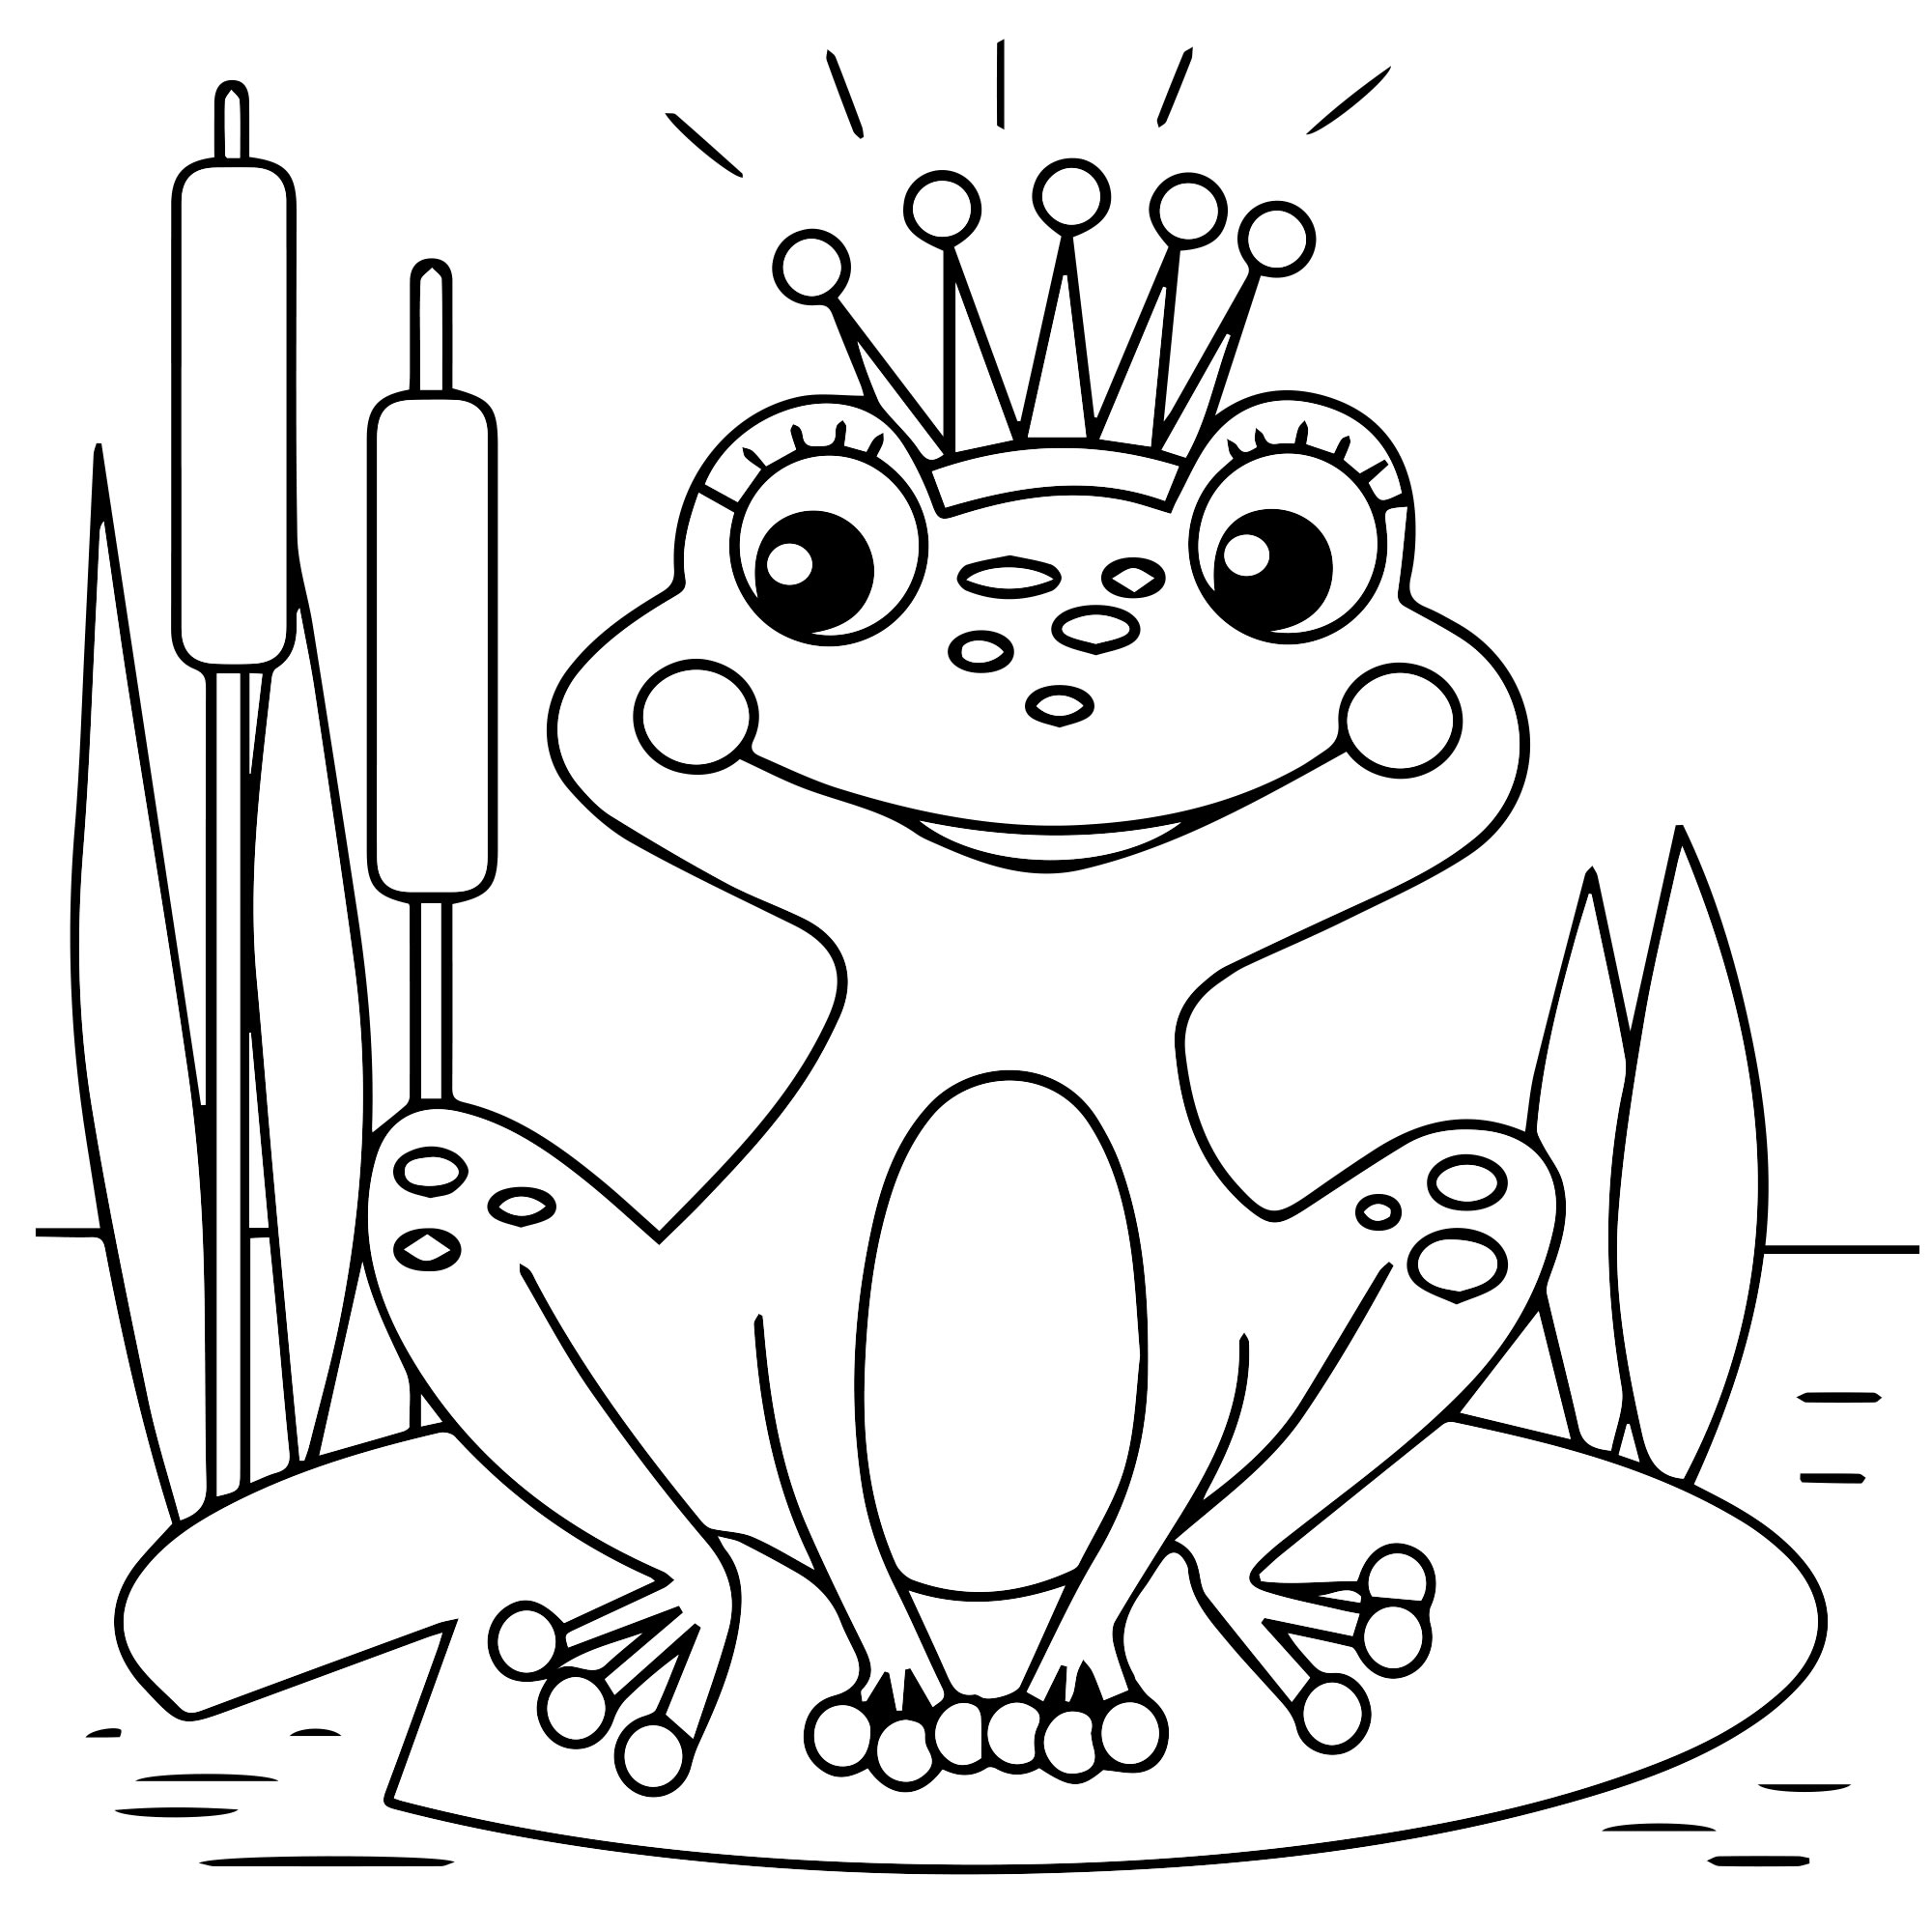 Принцесса лягушка раскраска для детей